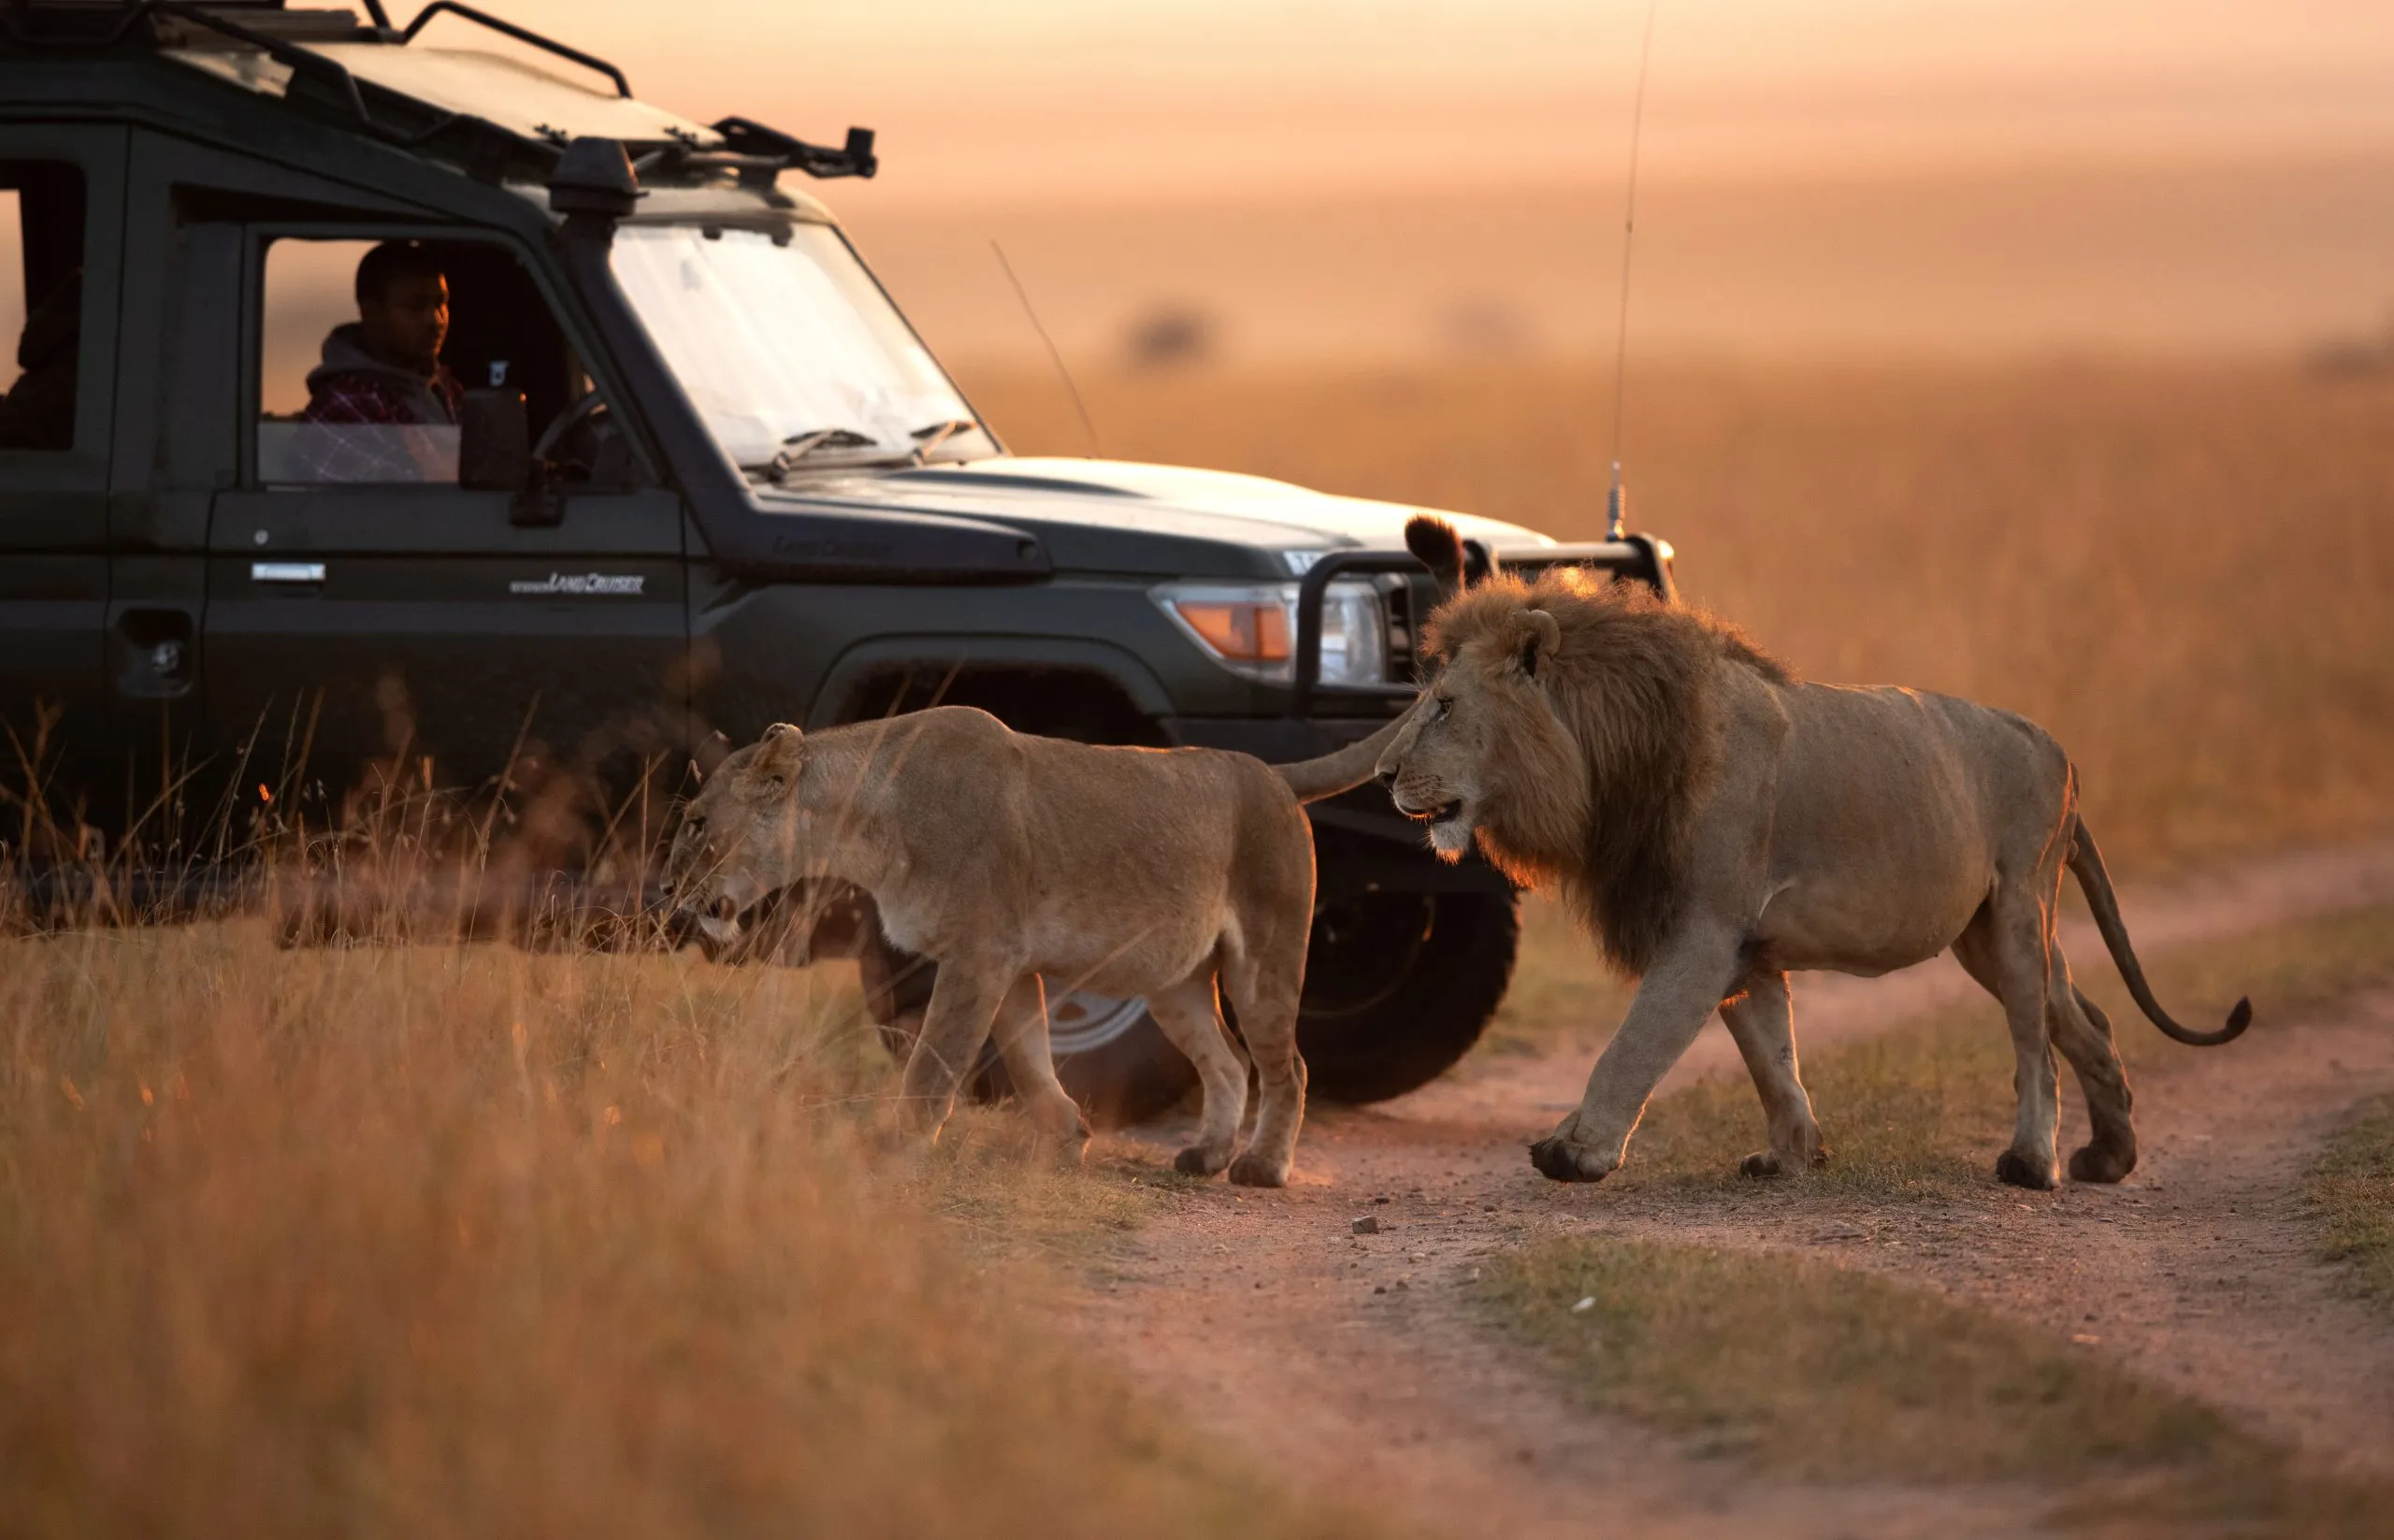 MASAI MARA, KEYNA-SEPTEMBER 06: Turist tittar på lejonpar som rör sig i gräsmarkerna i Masai Mara National Reserve den 06 september 2022.